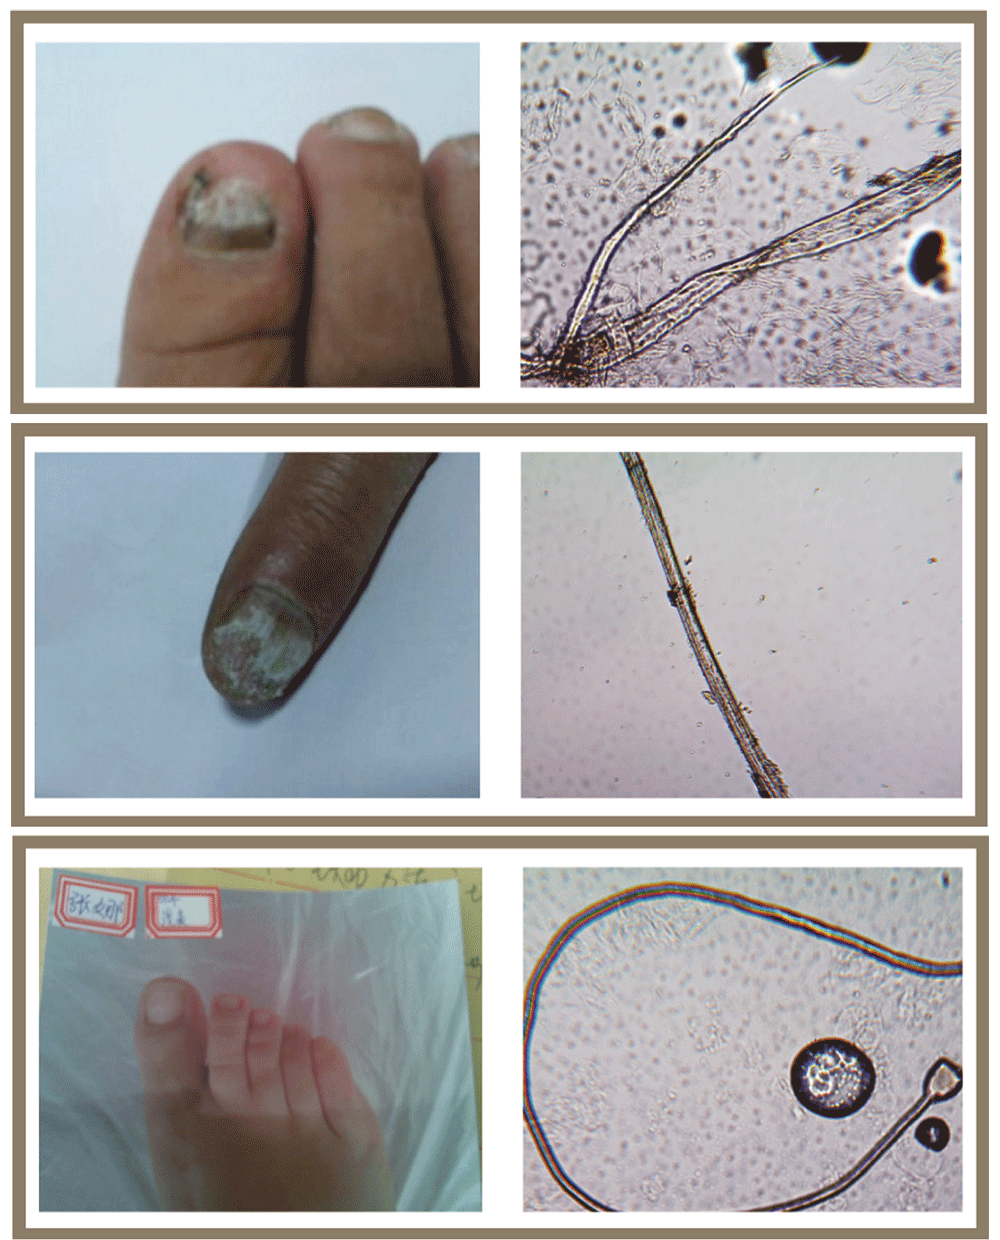 灰指甲显微镜下 真菌图片